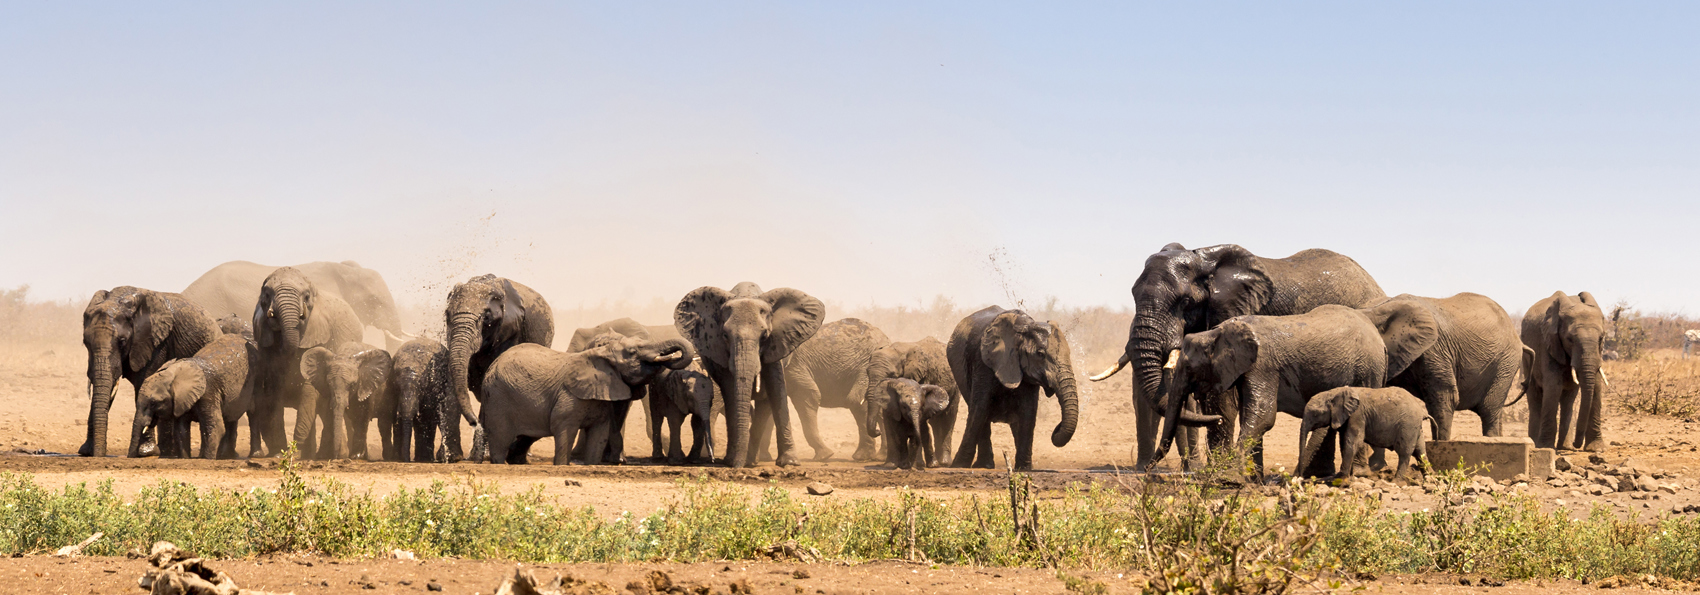 sydafrika - kruger_elefanter_01